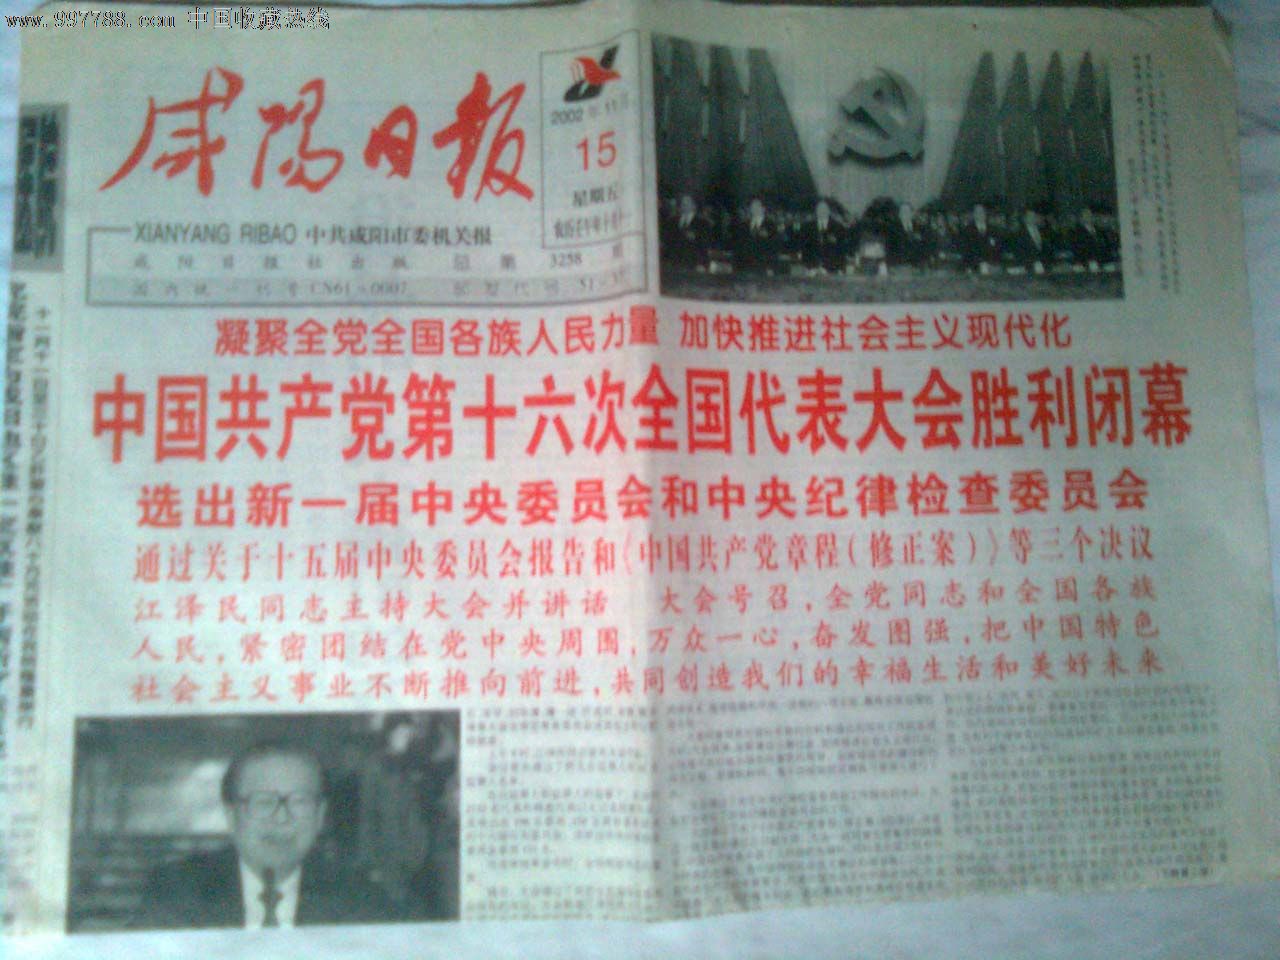 此为2002年11月15日出版的《咸阳日报》中国共产党第十六次全国代表